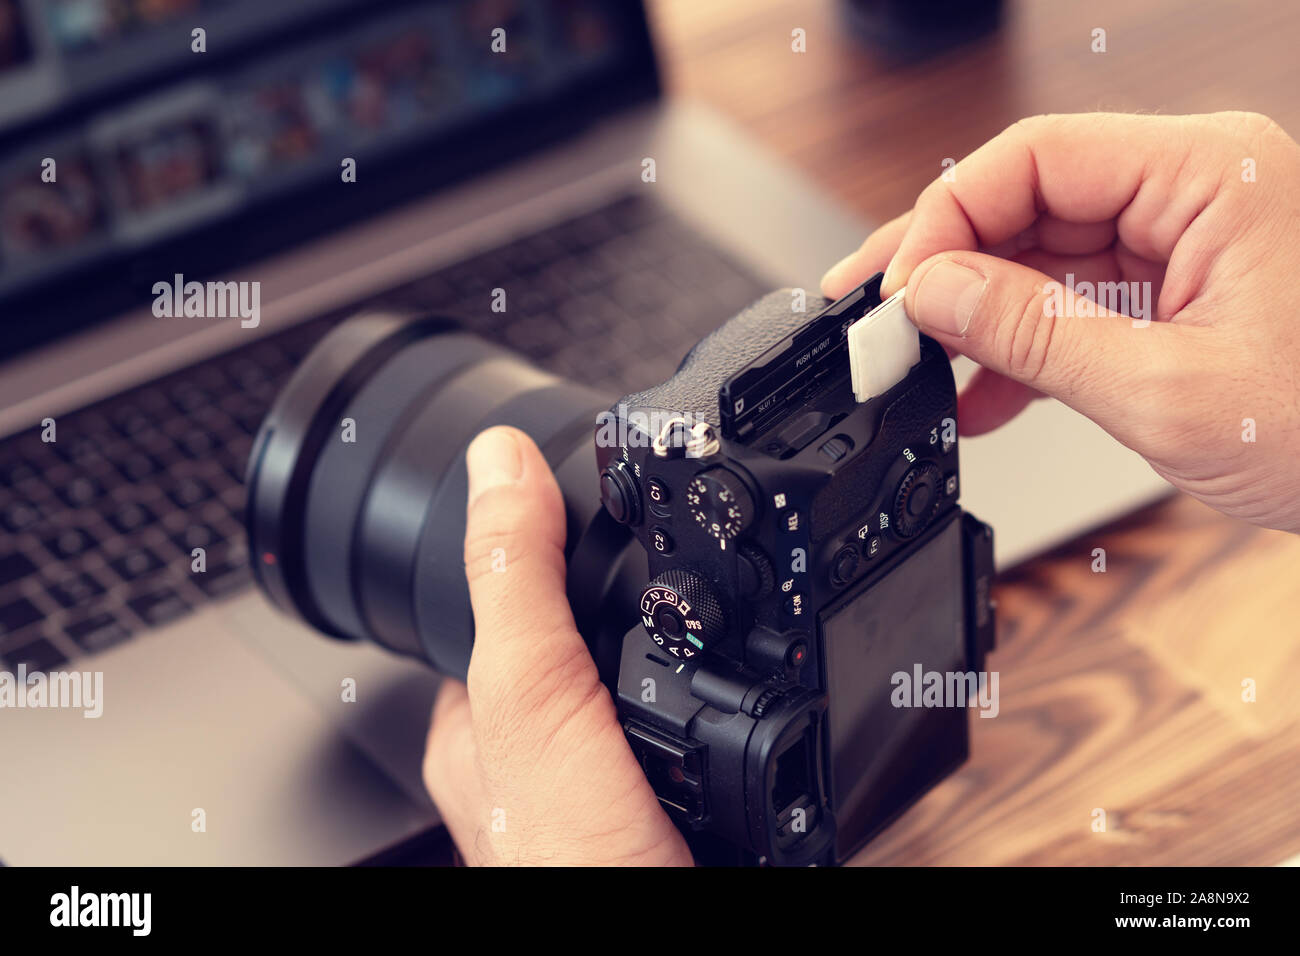 Photographe d'insérer ou de retirer une carte mémoire dans l'appareil photo professionnel. Banque D'Images